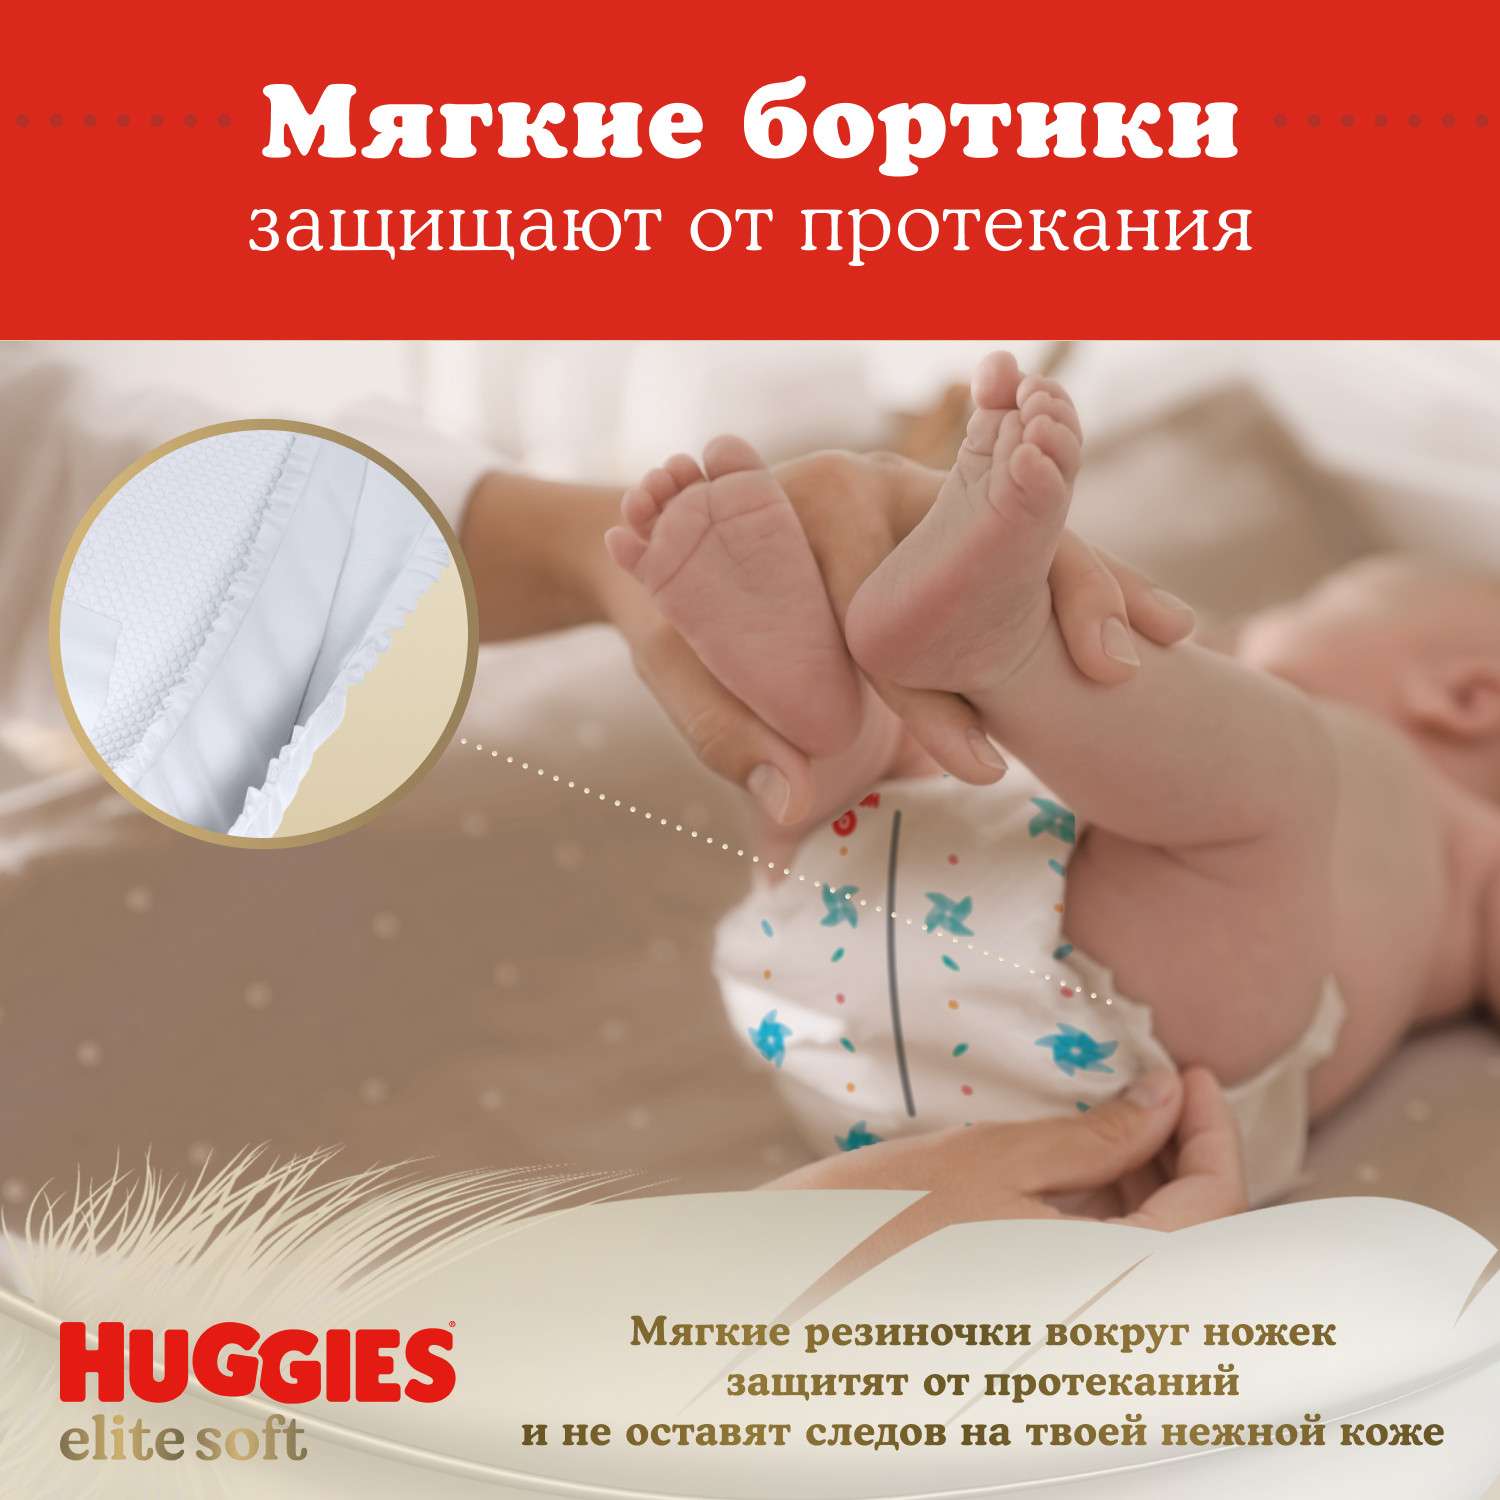 Подгузники Huggies Elite Soft для новорожденных 1 3-5кг 50шт - фото 12